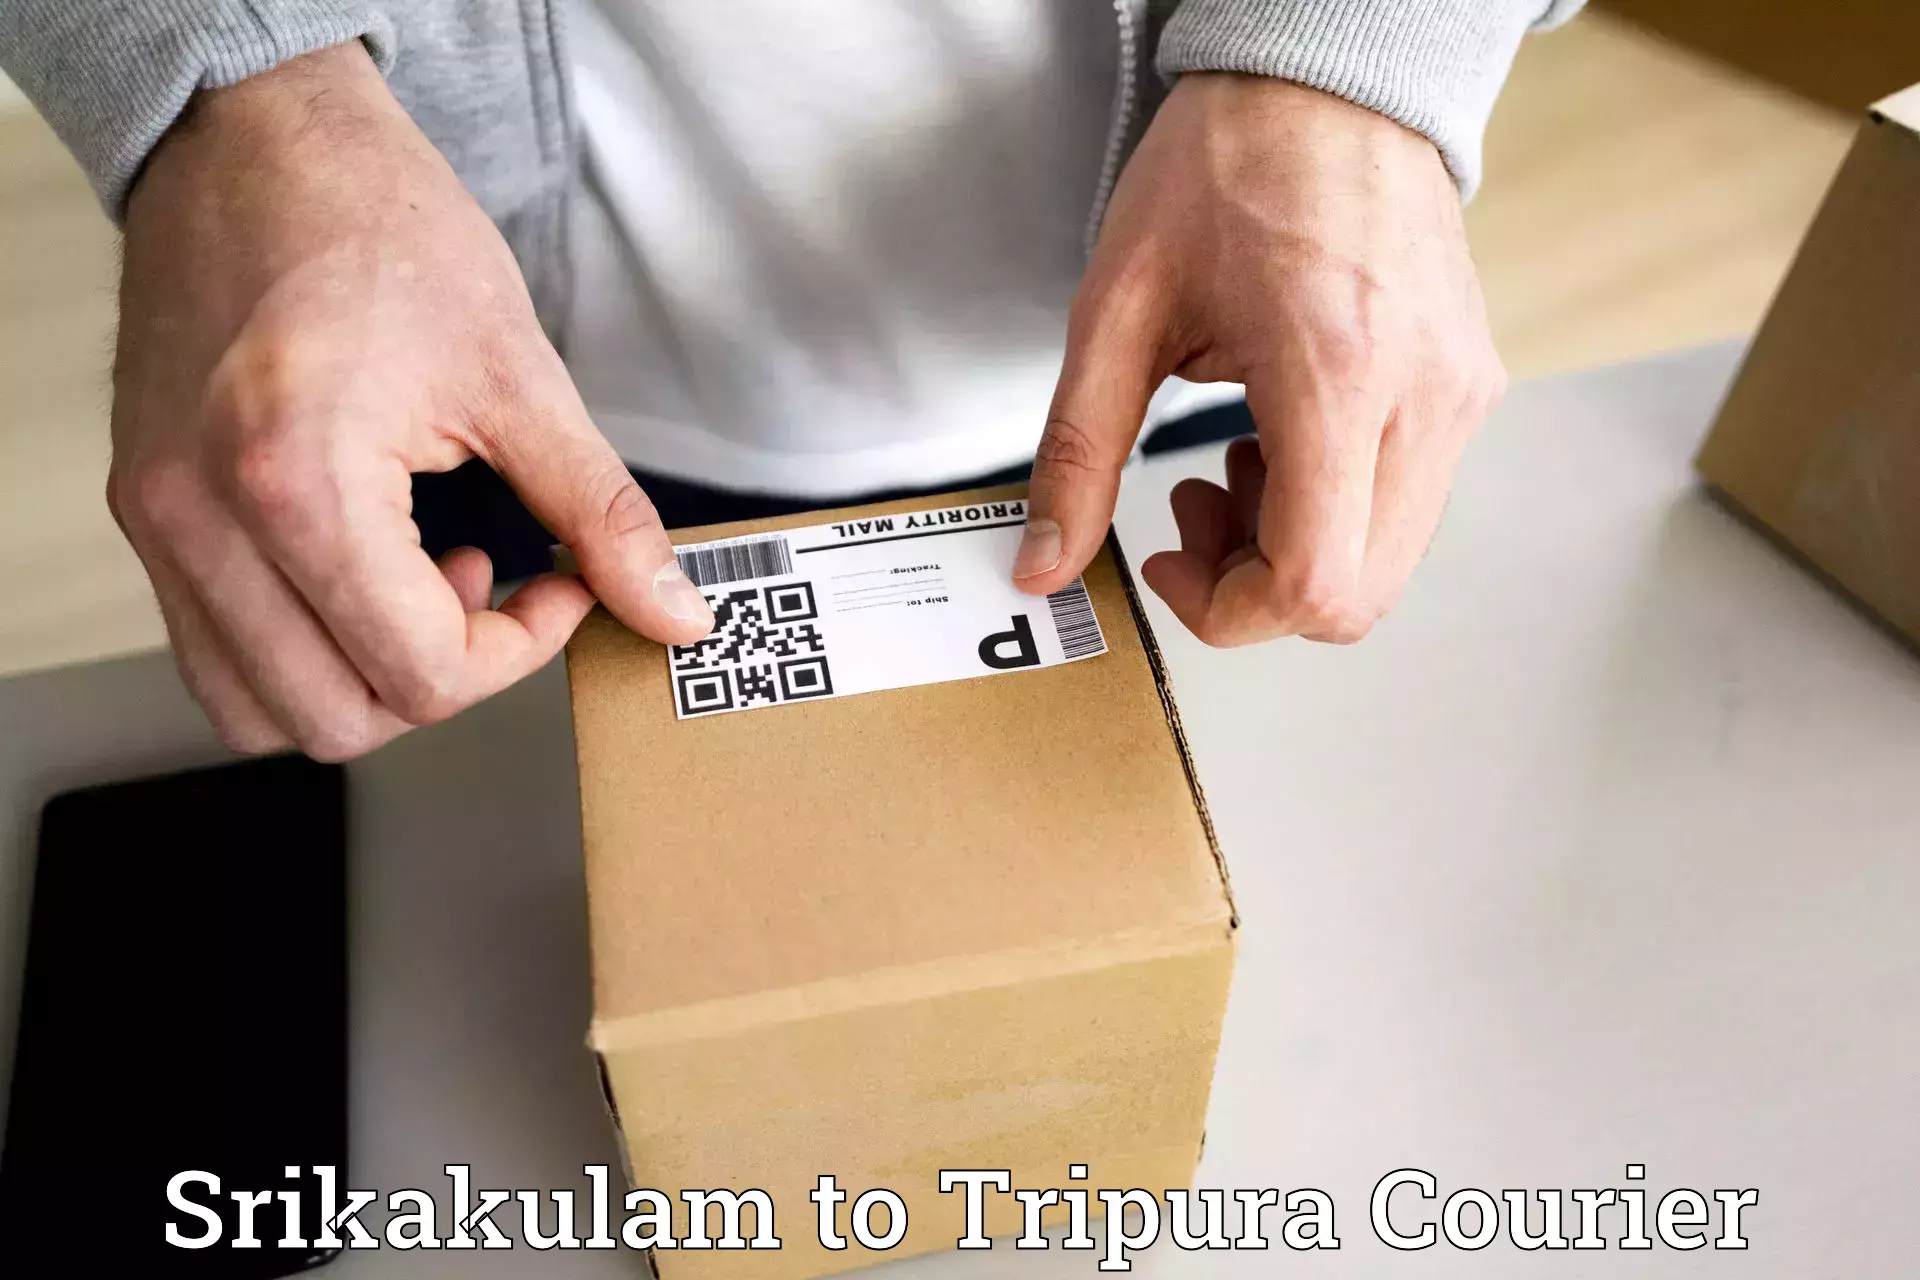 Efficient parcel service Srikakulam to Khowai